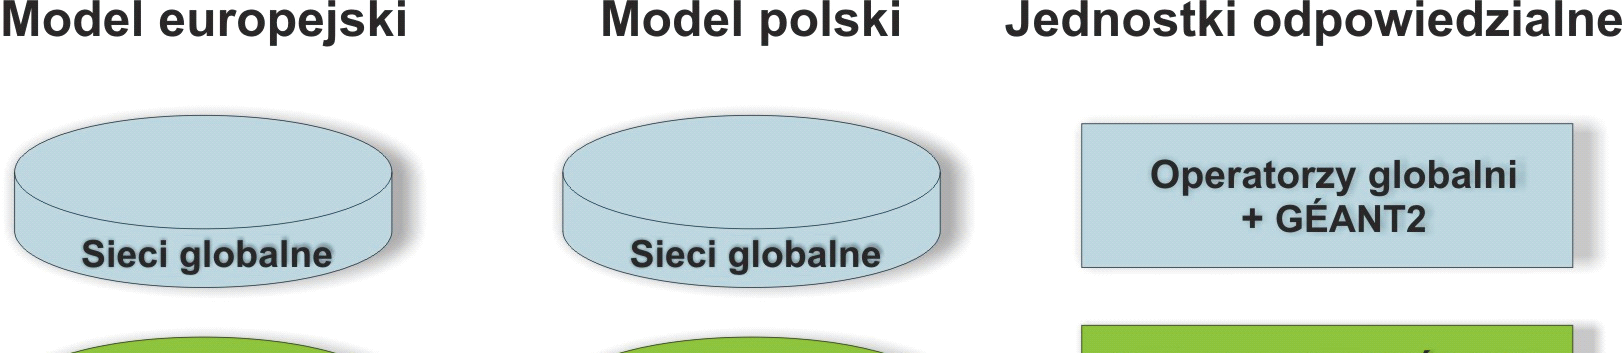 58 Maciej Stroiński, Jan Węglarz się model polski od modelu europejskiego (ryc. 1), w którym sieci kampusowe dołączone są bezpośrednio do sieci krajowej (tzw.